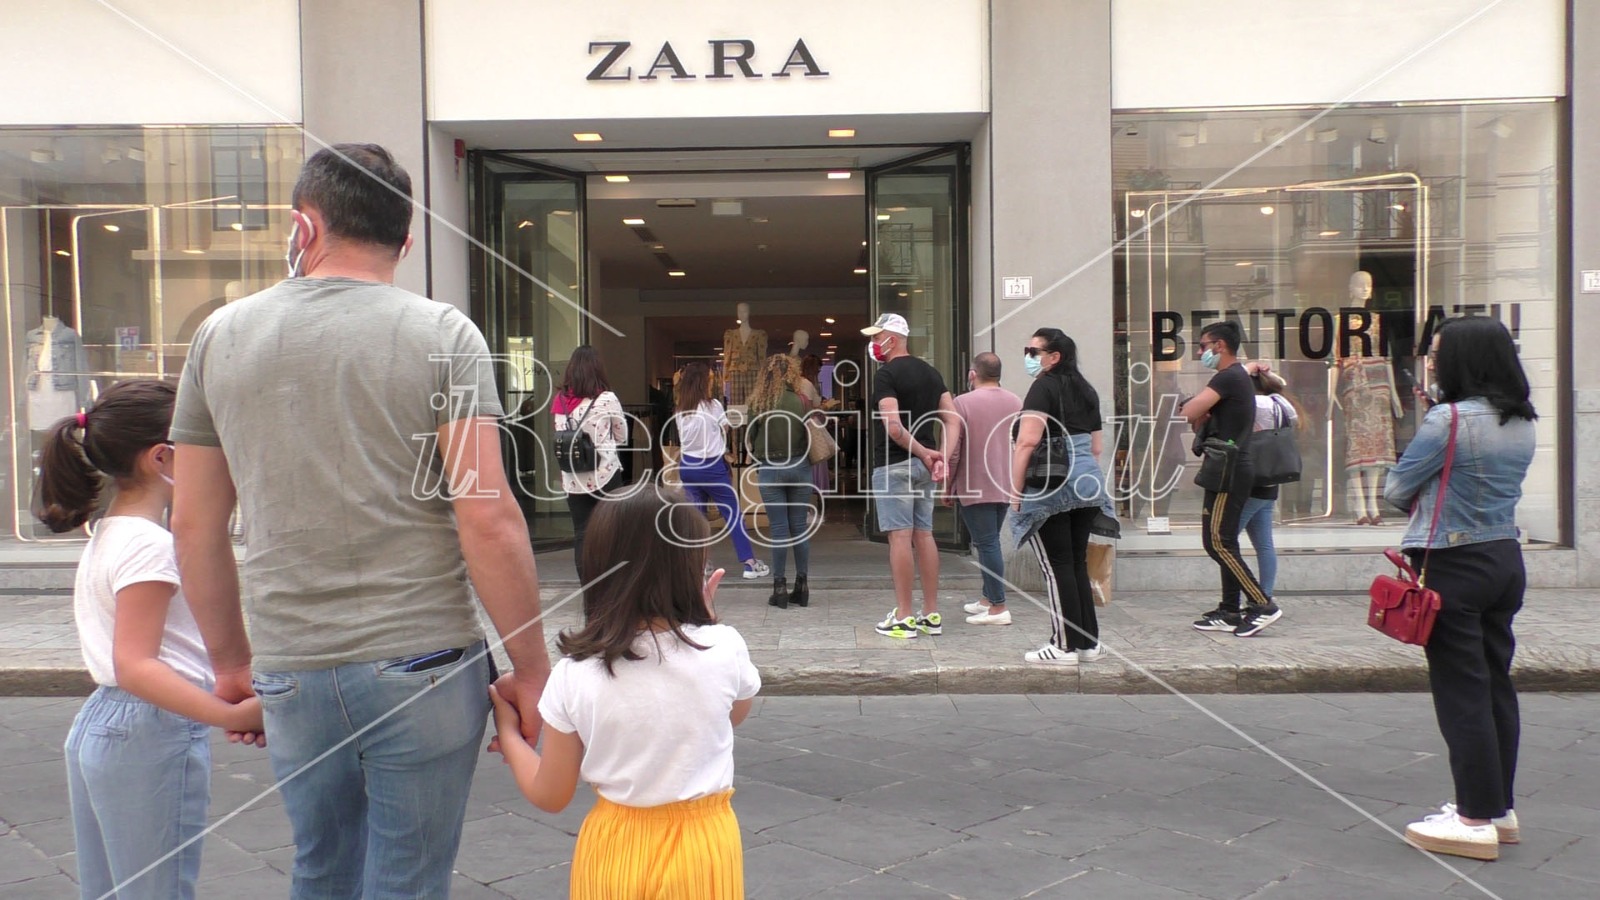 Coronavirus a Reggio Calabria, riaprono i negozi: alla ricerca della normalità